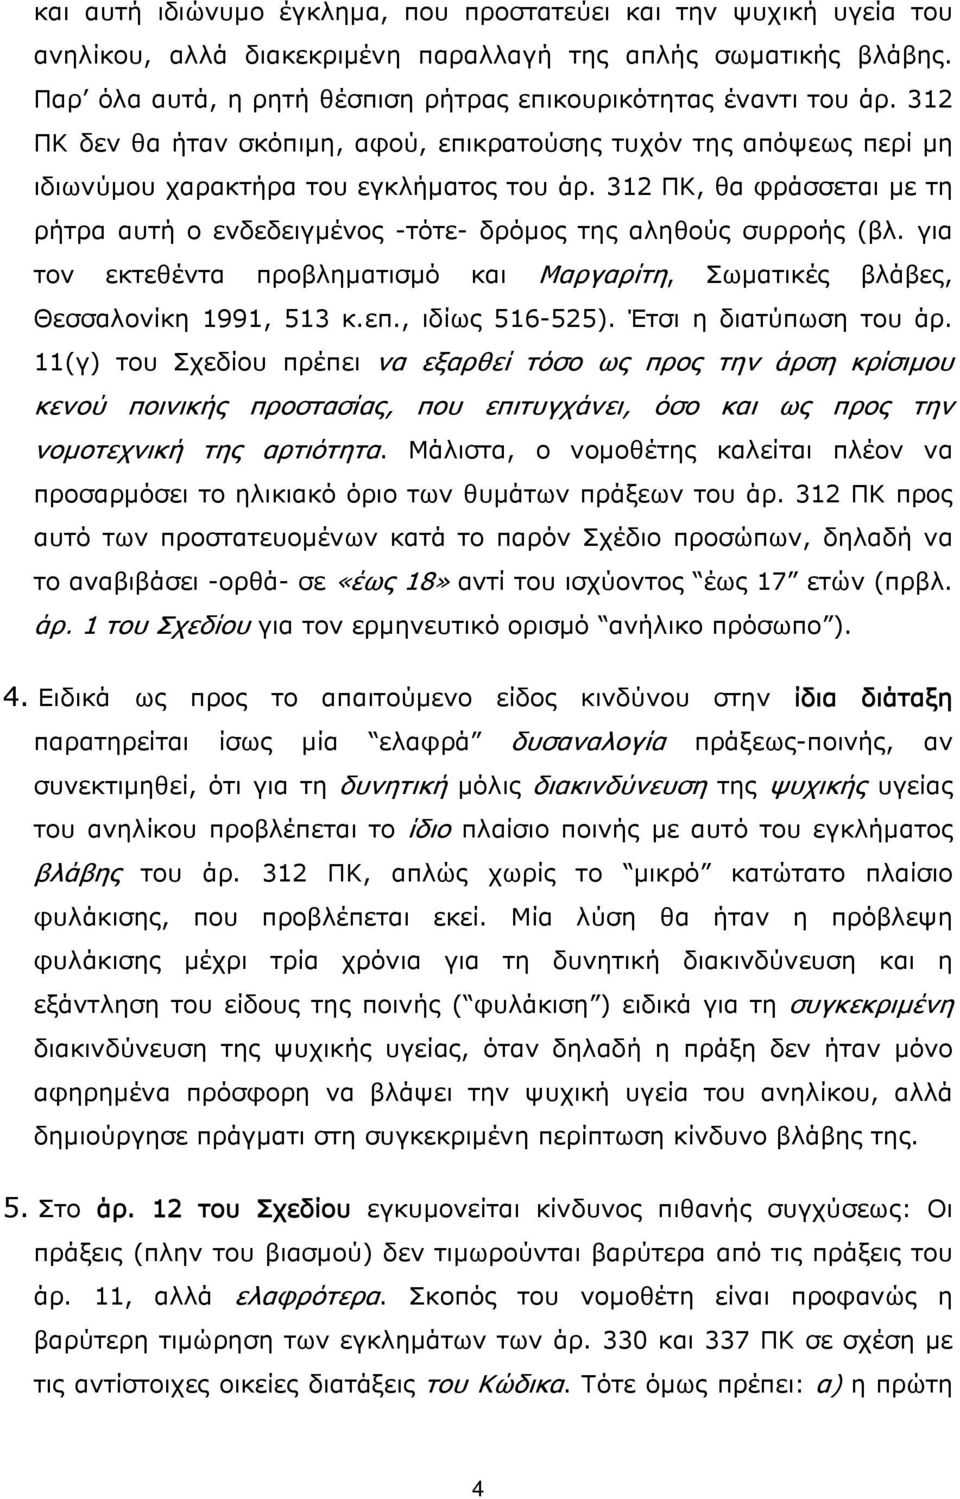 312 ΠΚ, θα φράσσεται με τη ρήτρα αυτή ο ενδεδειγμένος -τότε- δρόμος της αληθούς συρροής (βλ. για τον εκτεθέντα προβληματισμό και Μαργαρίτη, Σωματικές βλάβες, Θεσσαλονίκη 1991, 513 κ.επ.